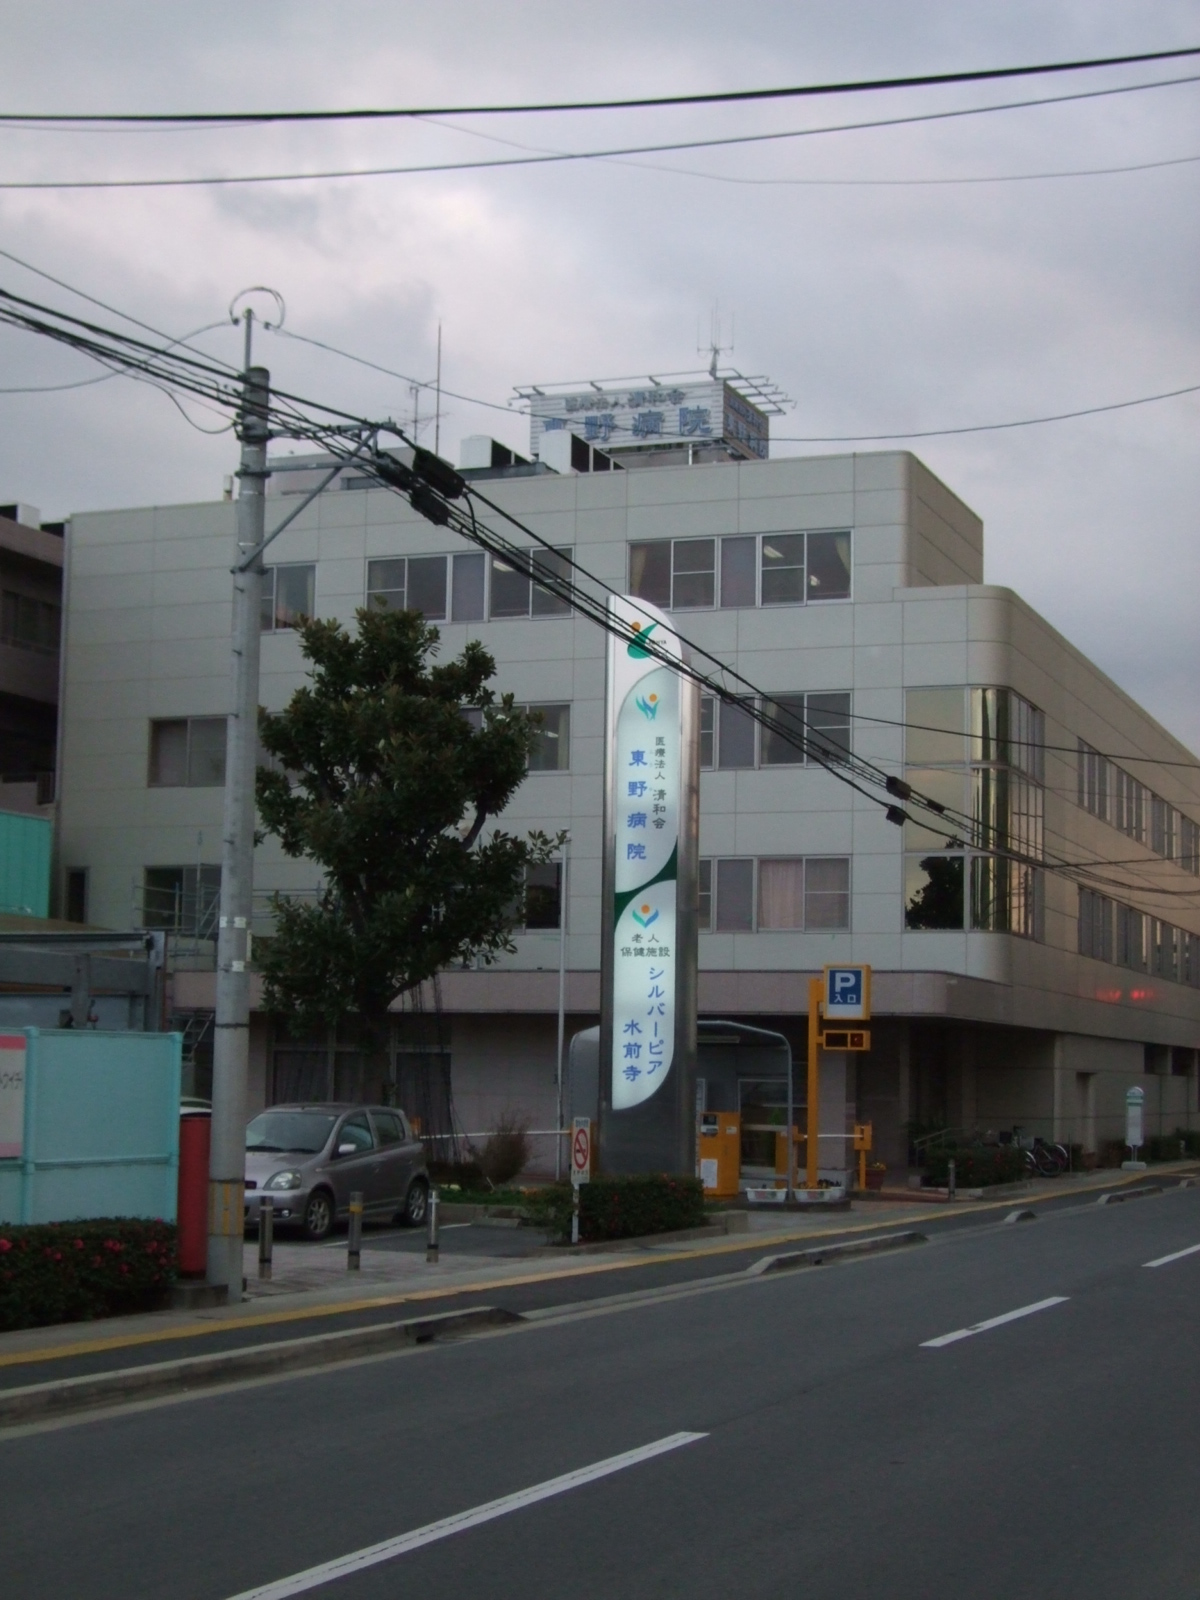 Hospital. Seiwa Board Higashino hospital (hospital) to 226m